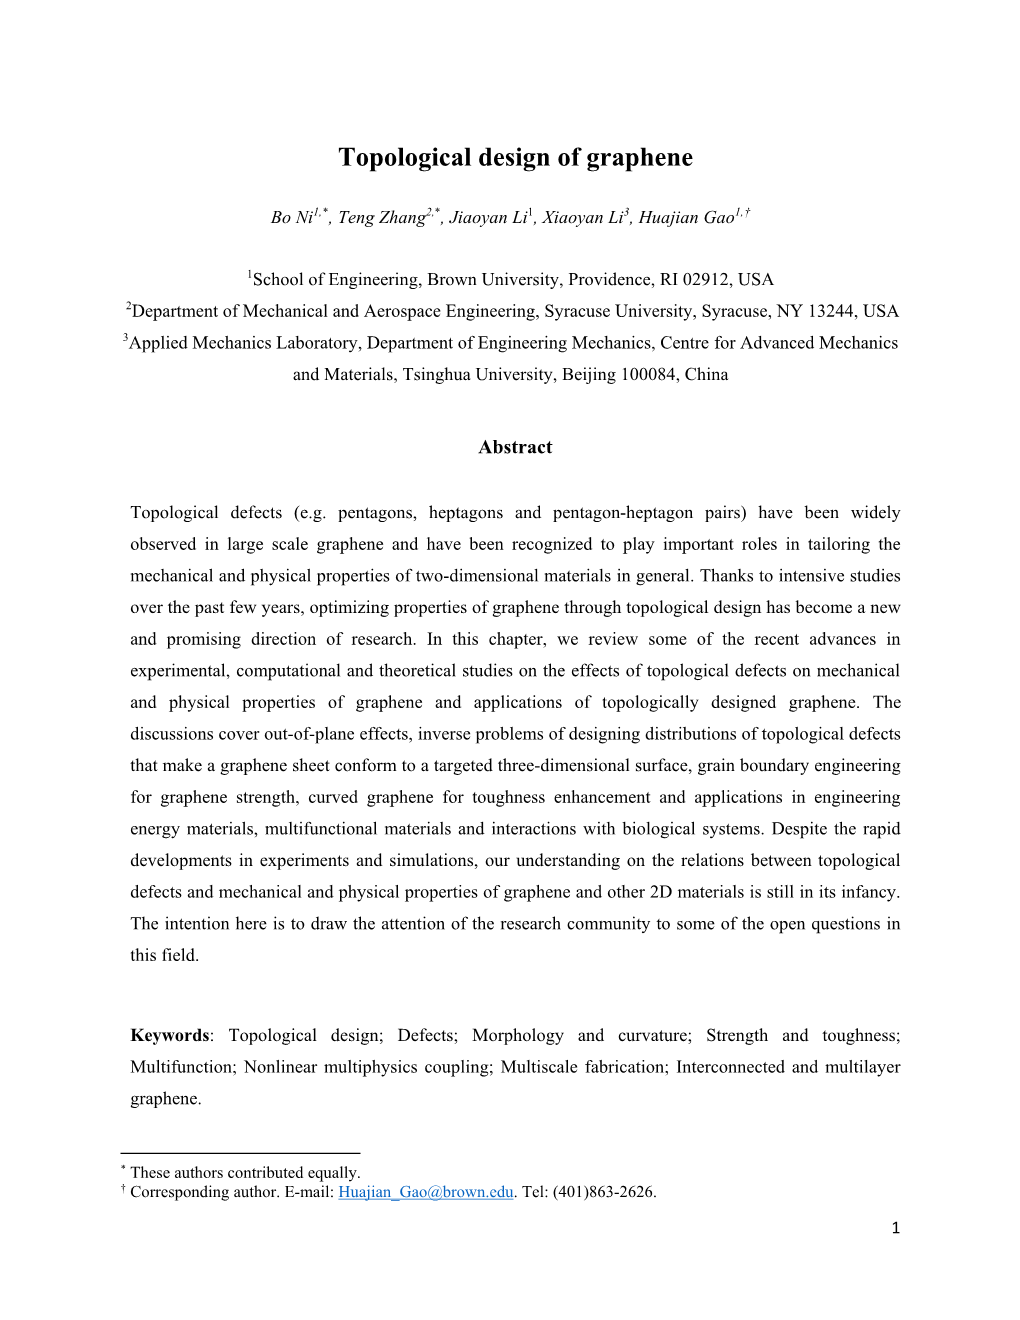 Topological Design of Graphene